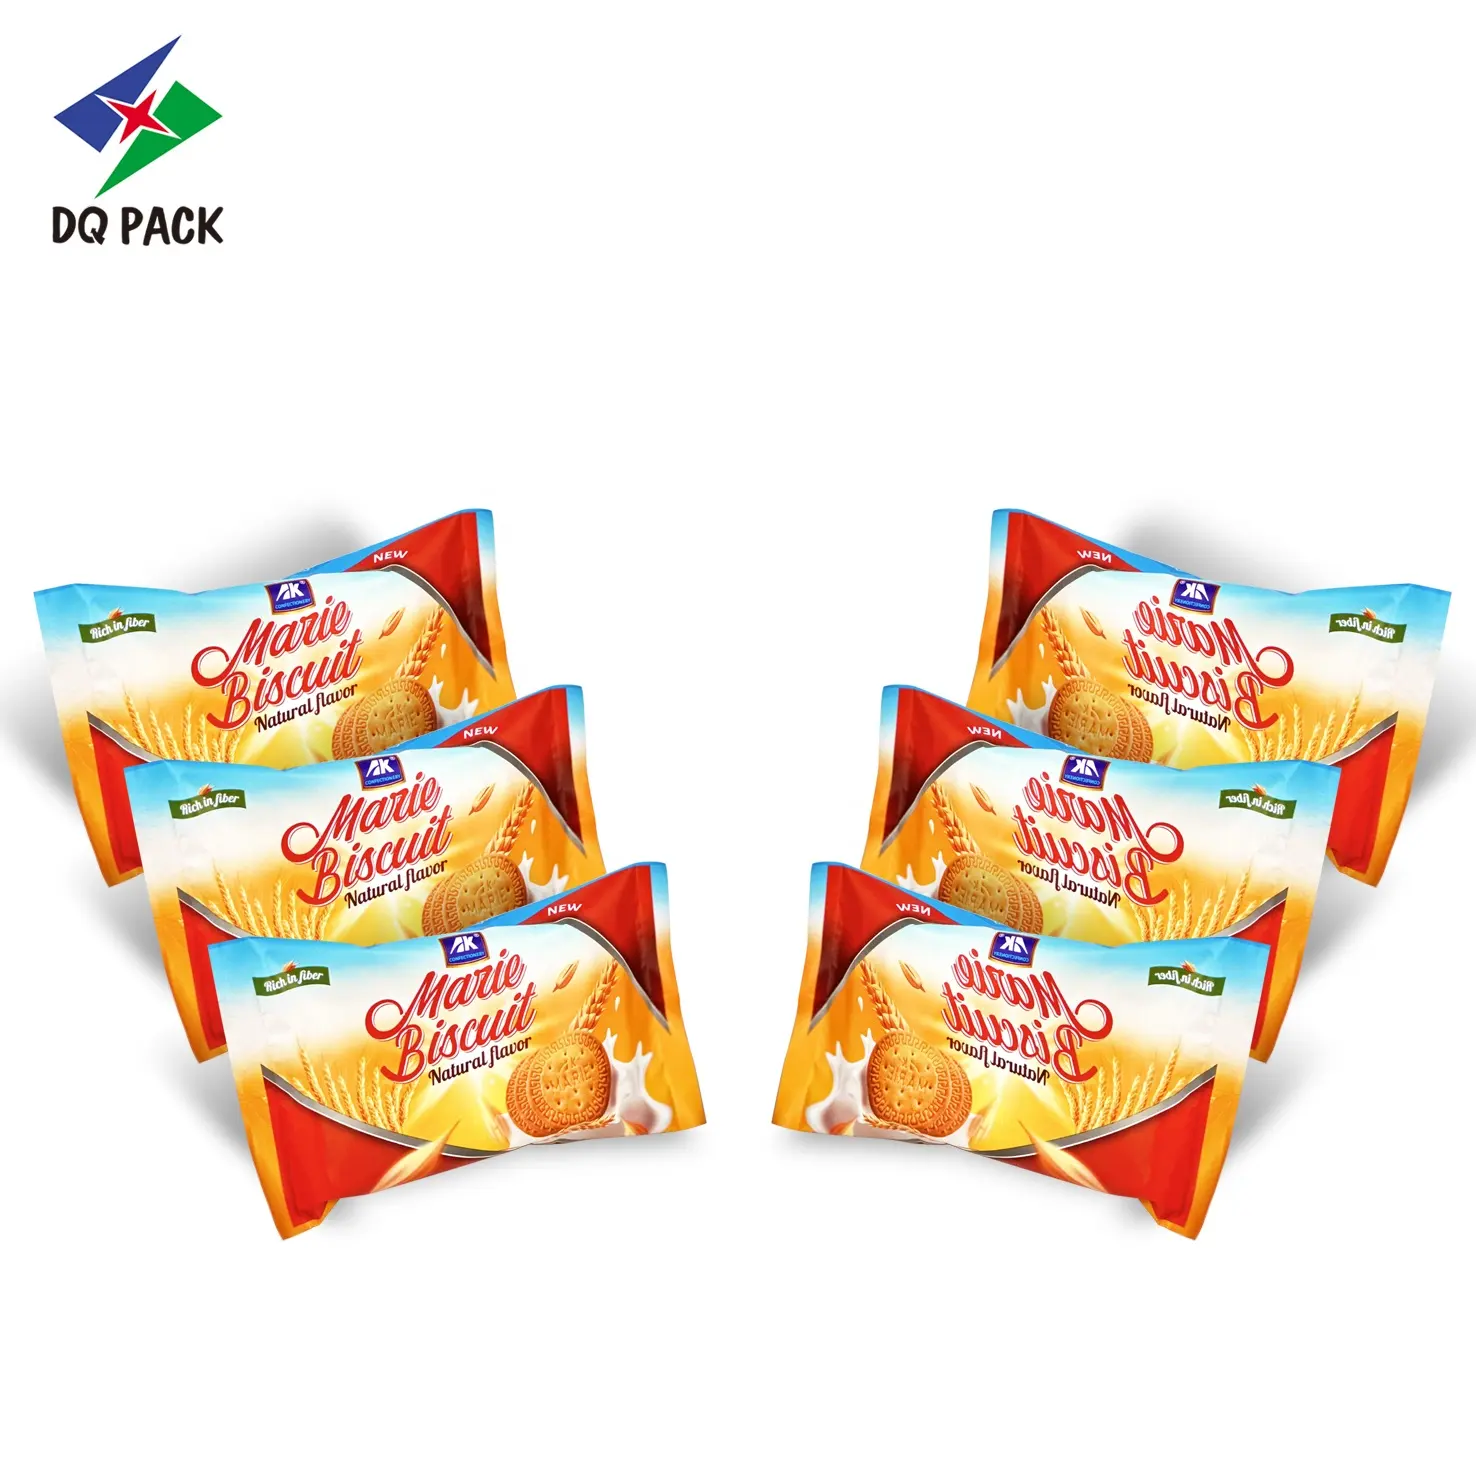 DQ PACK personnalisé Flexible Biscuit Cookie Snack emballage atomique rouleau Film flux Wrap métallique blanc BOPP sac à biscuits anti-odeur